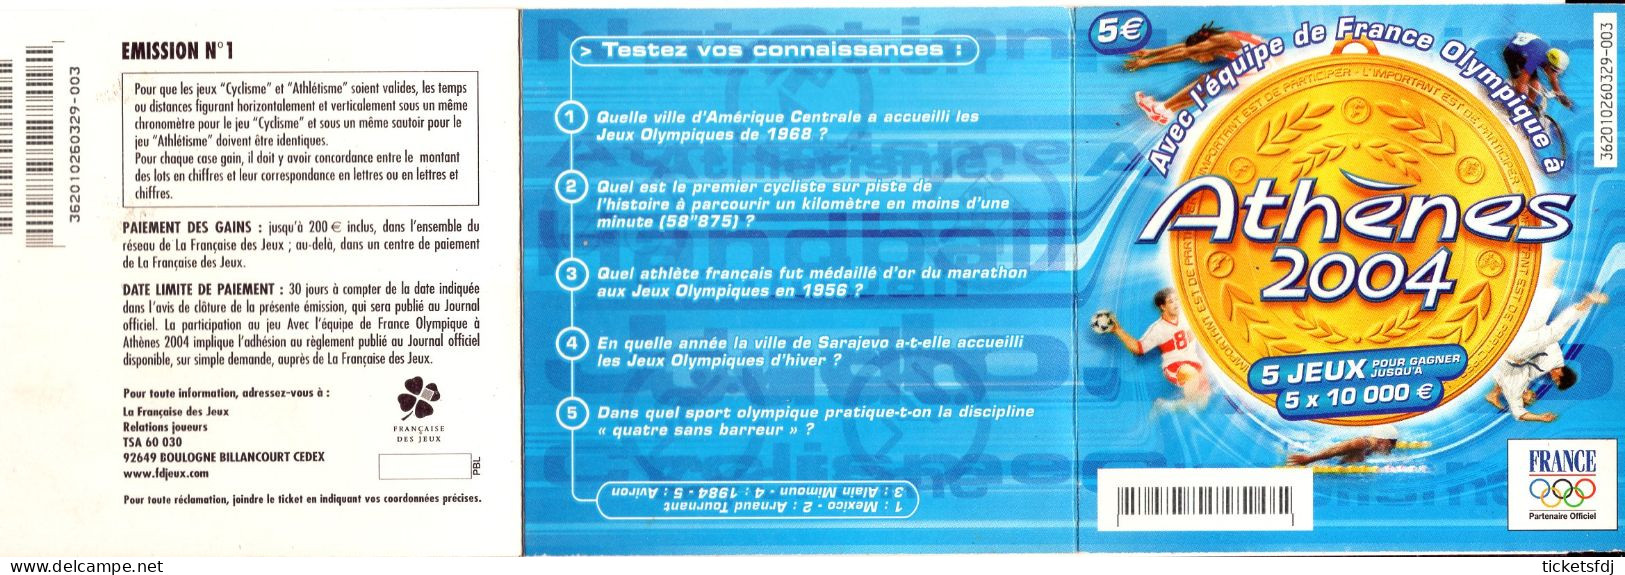 Grattage FDJ - ATHENES 2004 - 36201 - Trait Bleu Ou Trait Rouge - FRANCAISE DES JEUX - Lottery Tickets